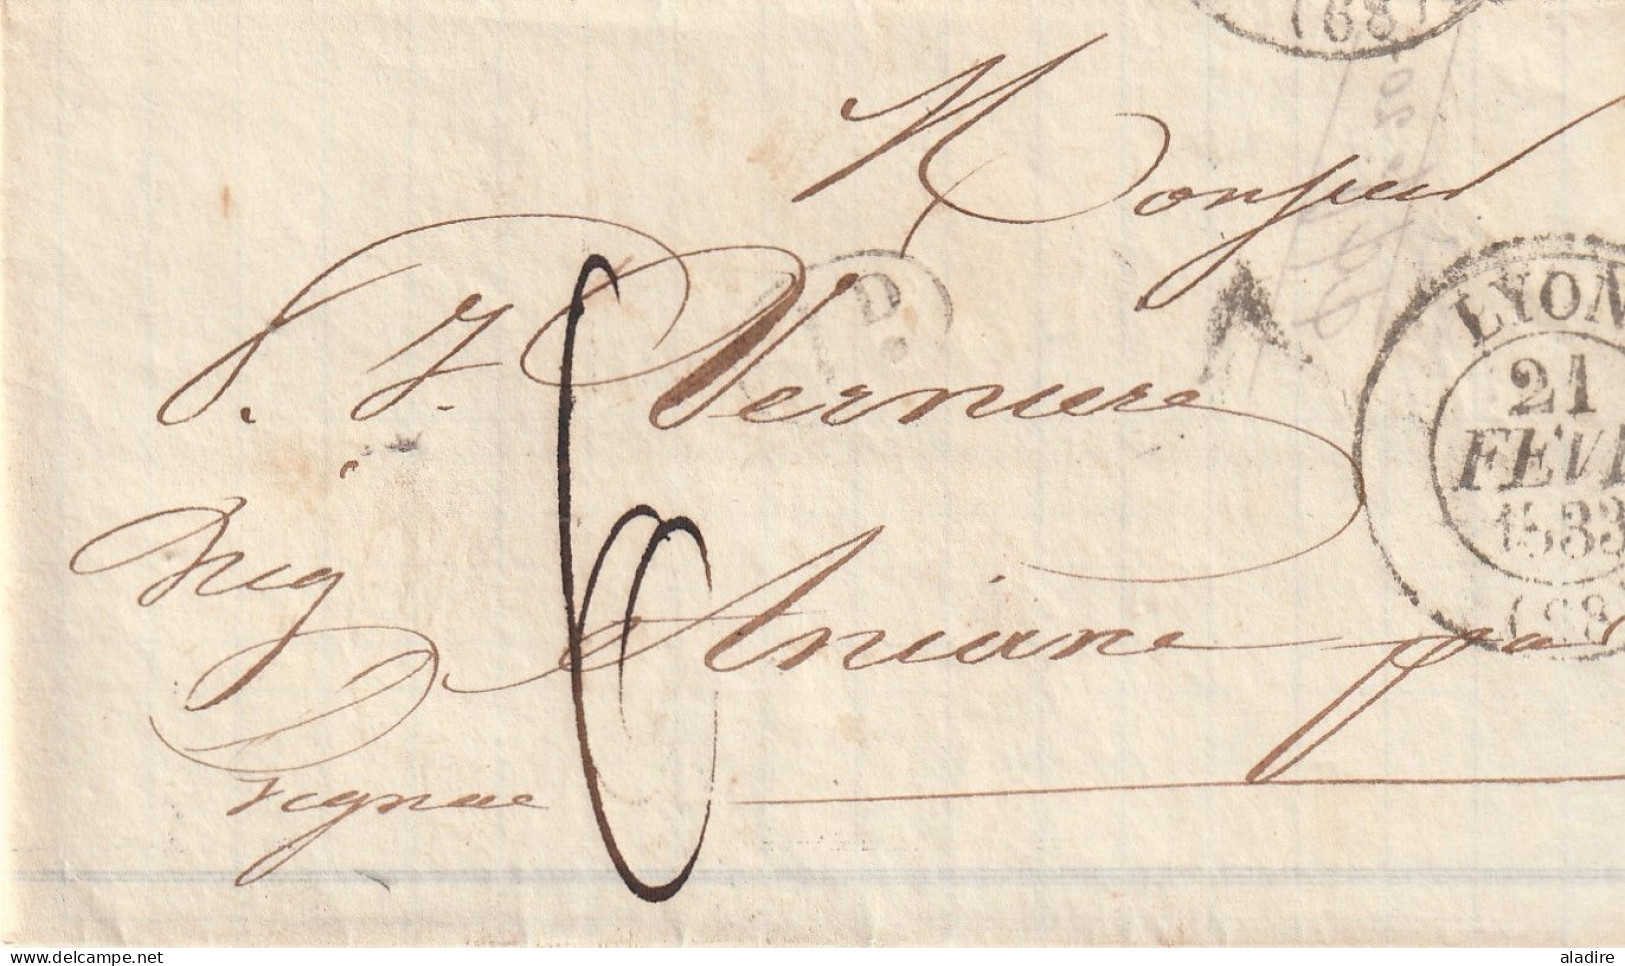 1833/1847 - collection de 15 LETTRES avec grds cachets, cursives, Décime Rural vers Aniane par Béziers & Gignac, Hérault